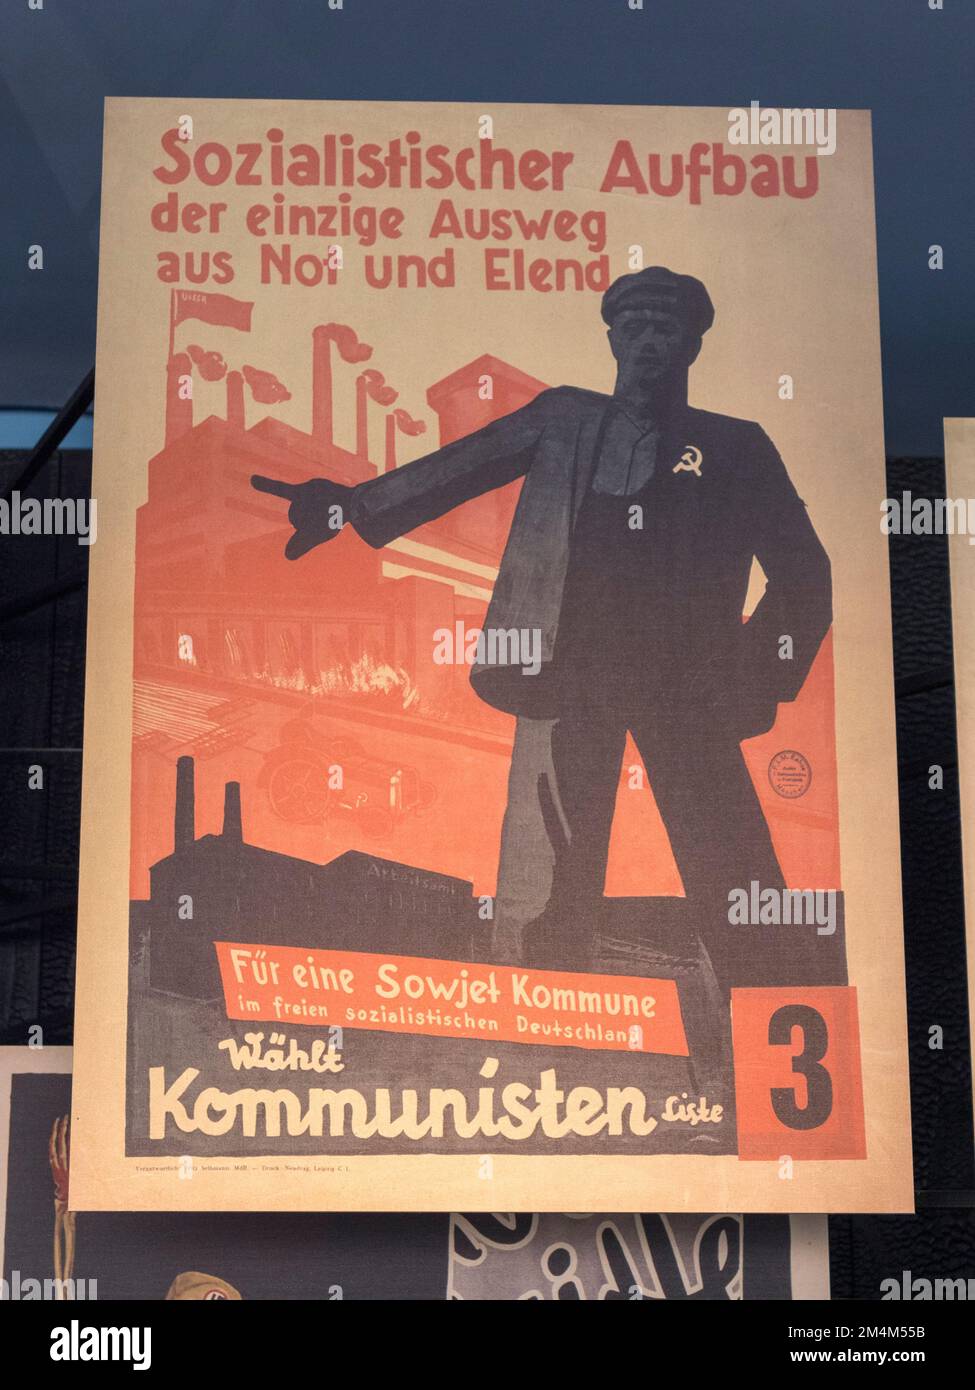 Ein 1930er-Propagandaposter von der Kommunistischen Partei Deutschlands, Holocaust-Galerien, Imperial war Museum, London, Großbritannien. Stockfoto